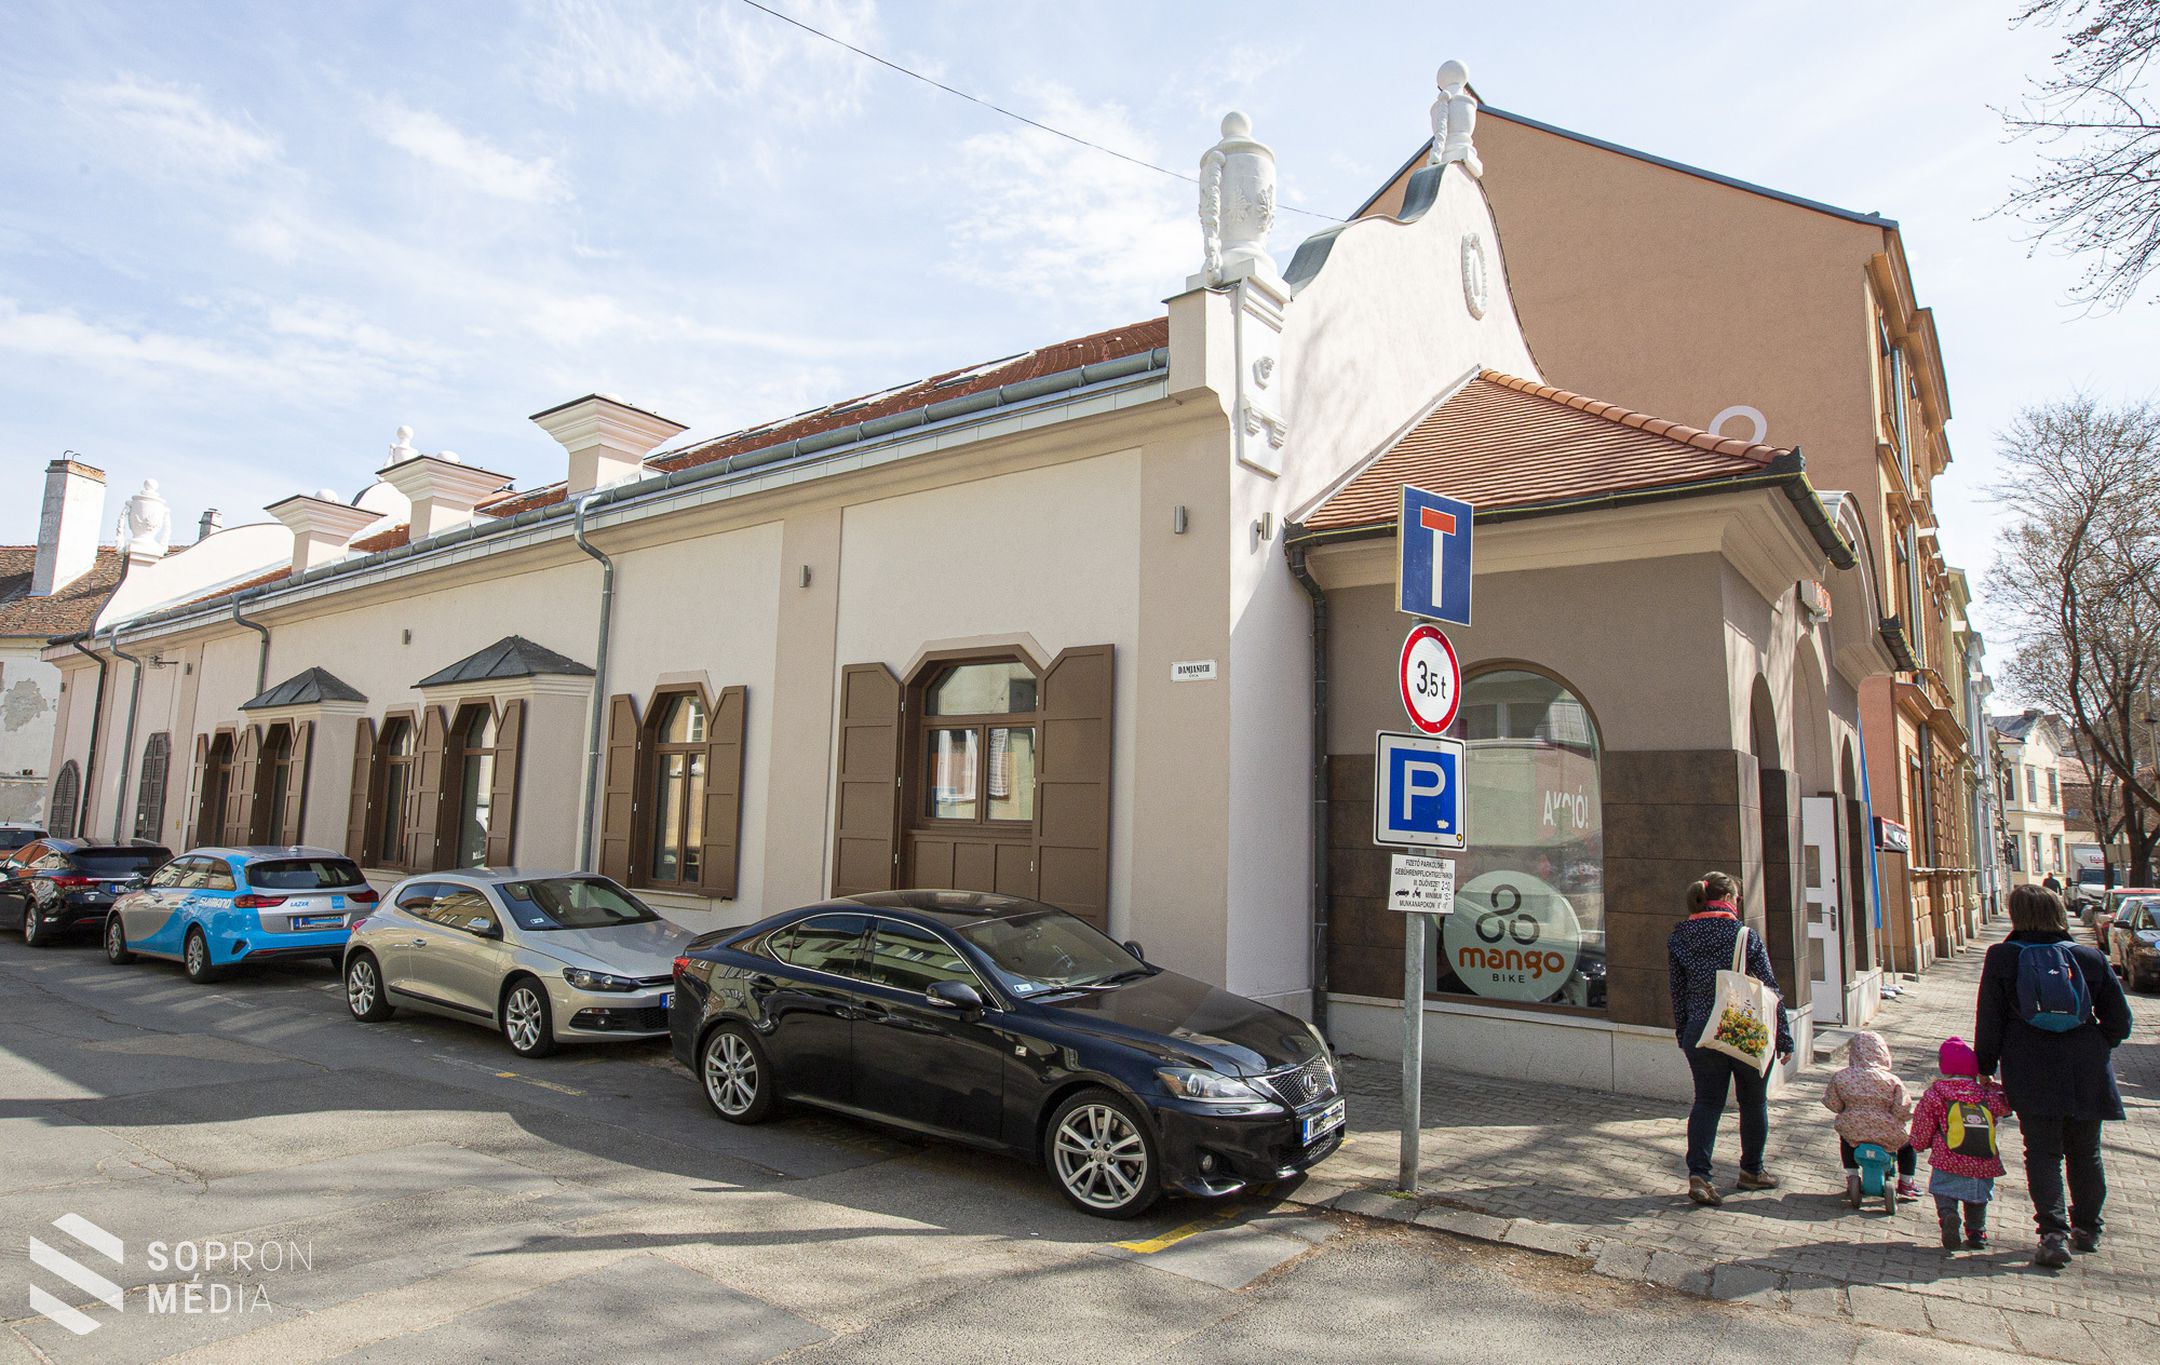 Újabb ikonikus épület újult meg Sopronban